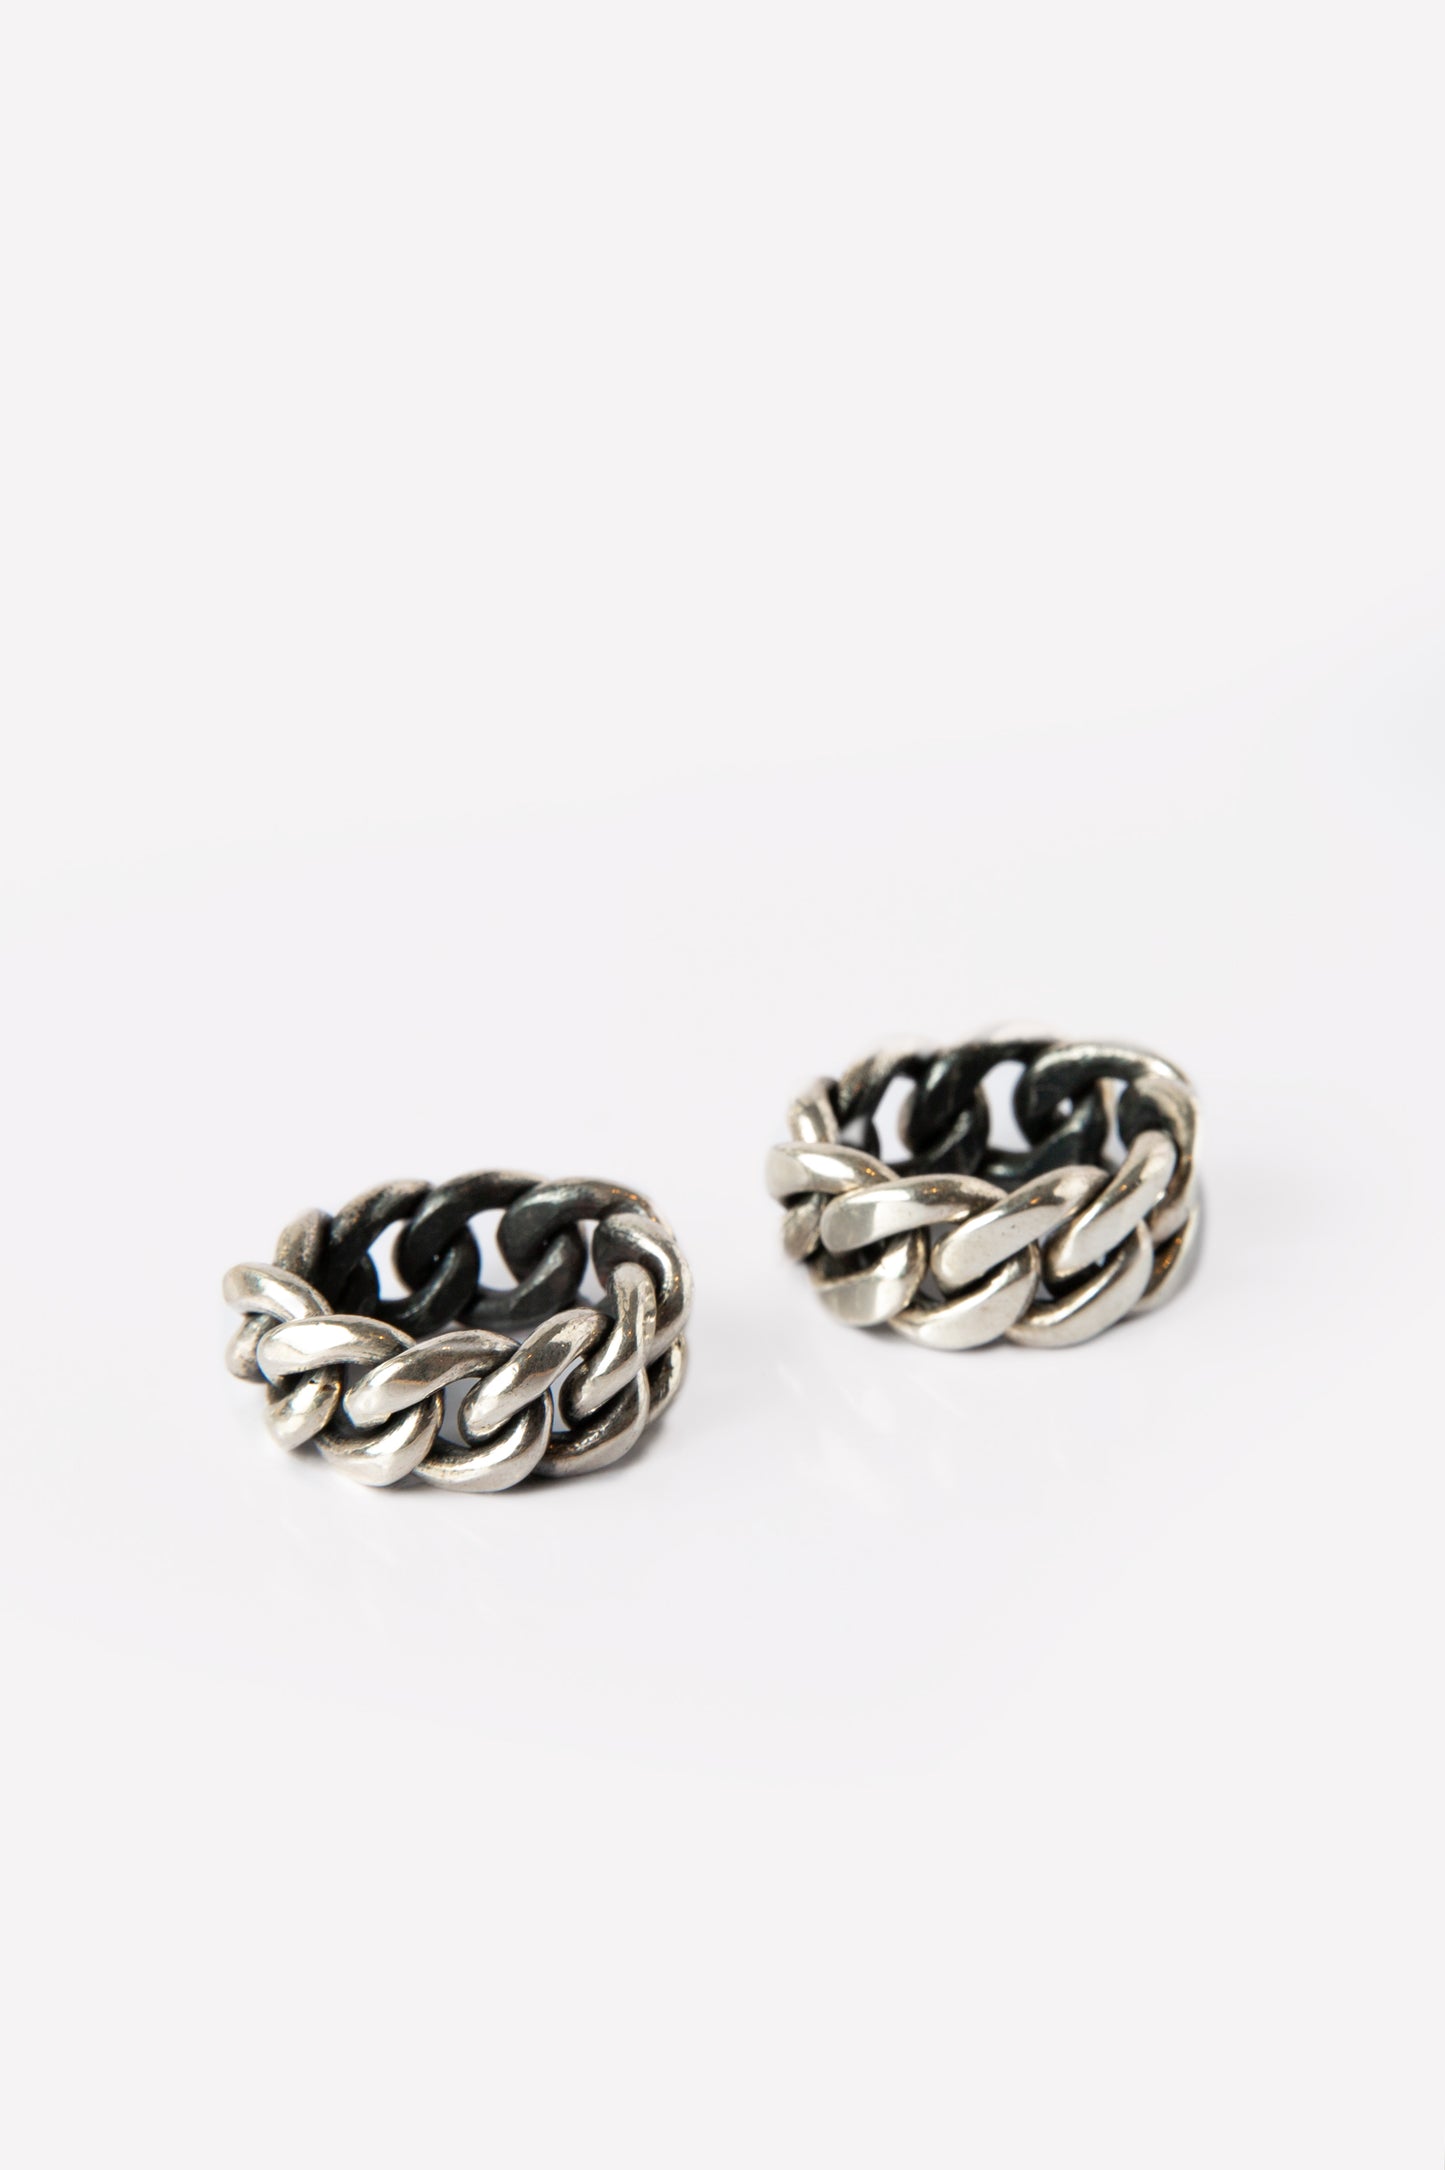 #anello #ring #argento #silver #catenagrande